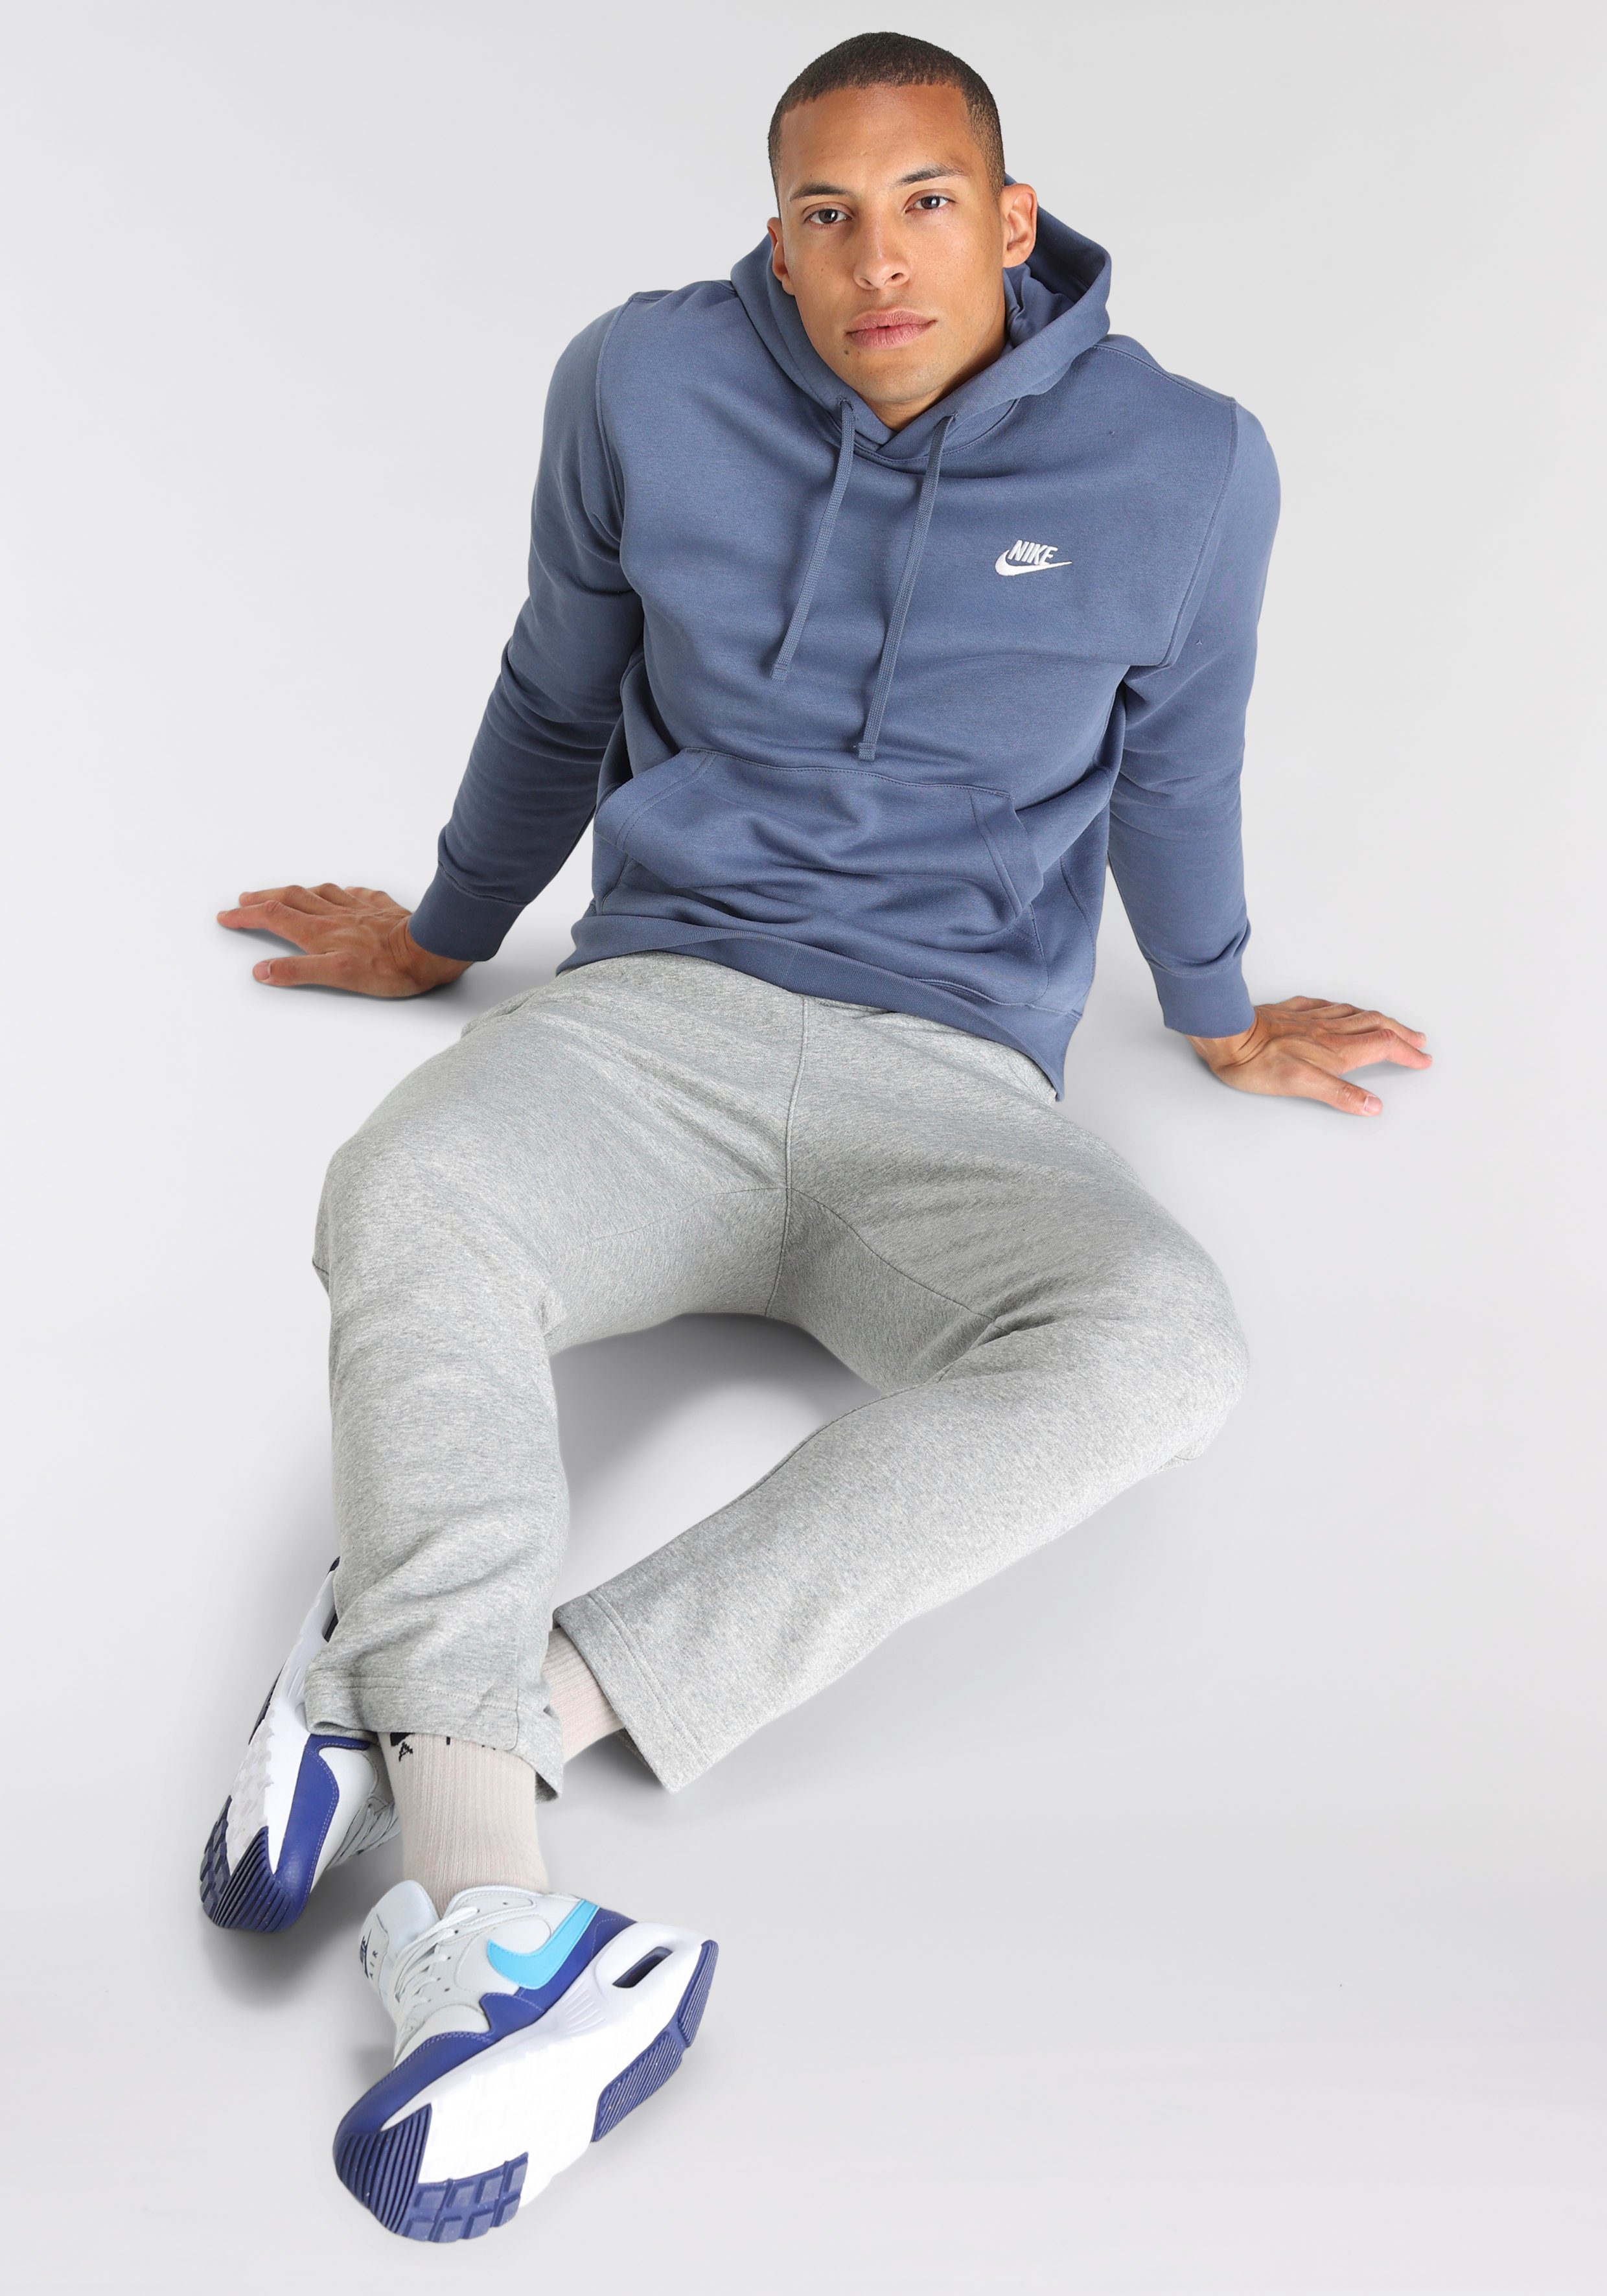 Graue Nike Jogginghosen für Herren online kaufen | OTTO